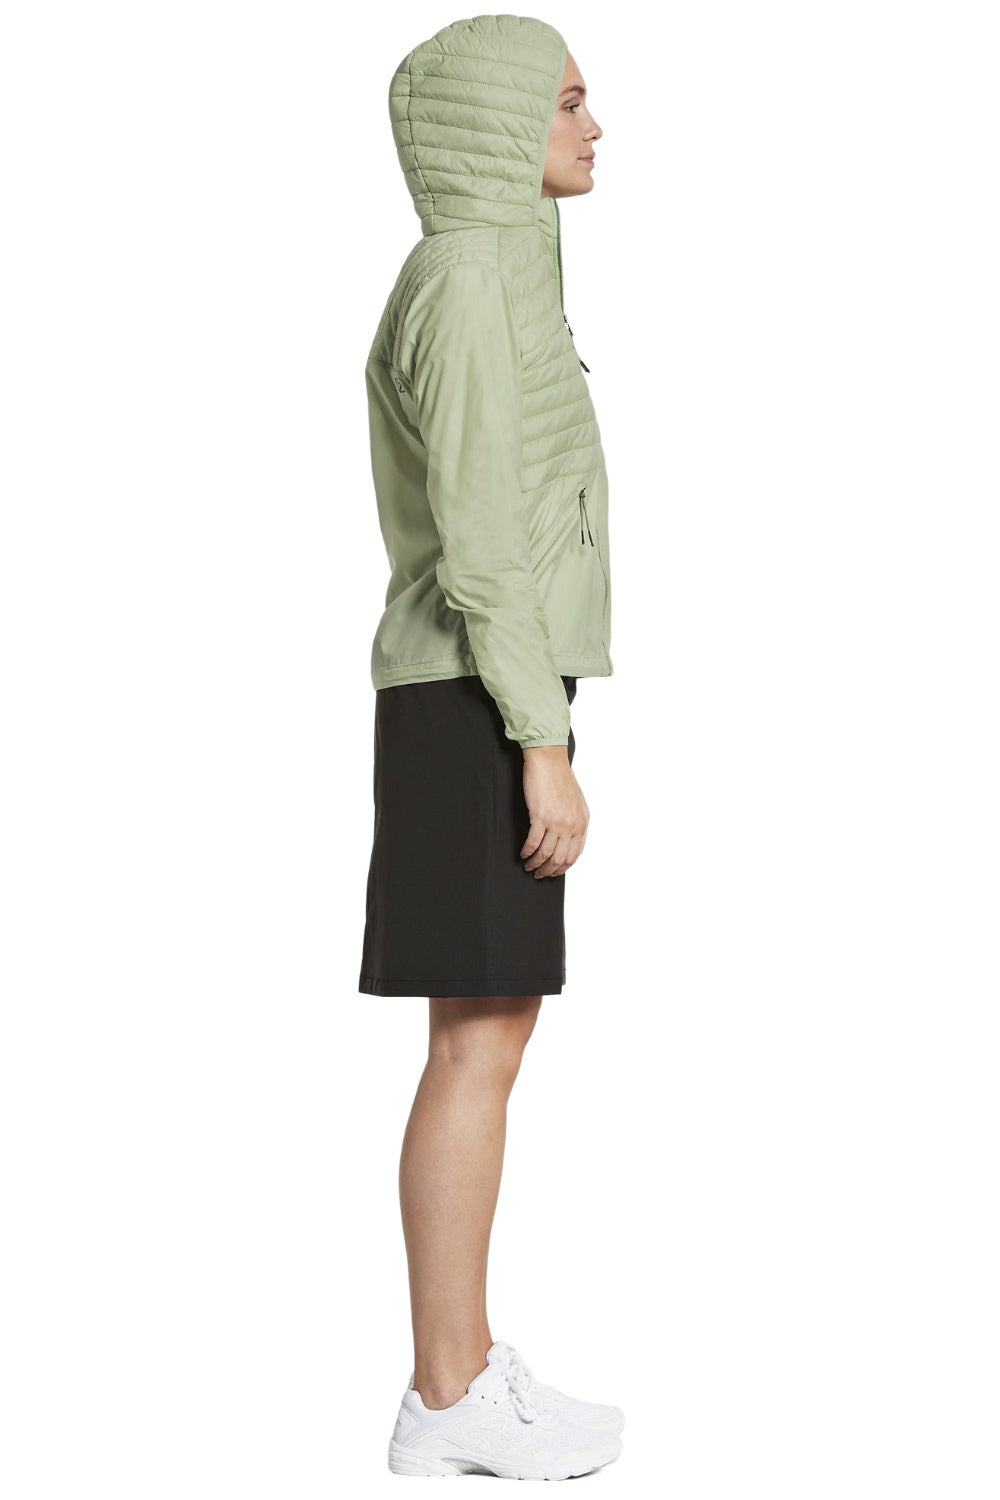 Didriksons Maj Womens Jacket 2 in Soft Green 